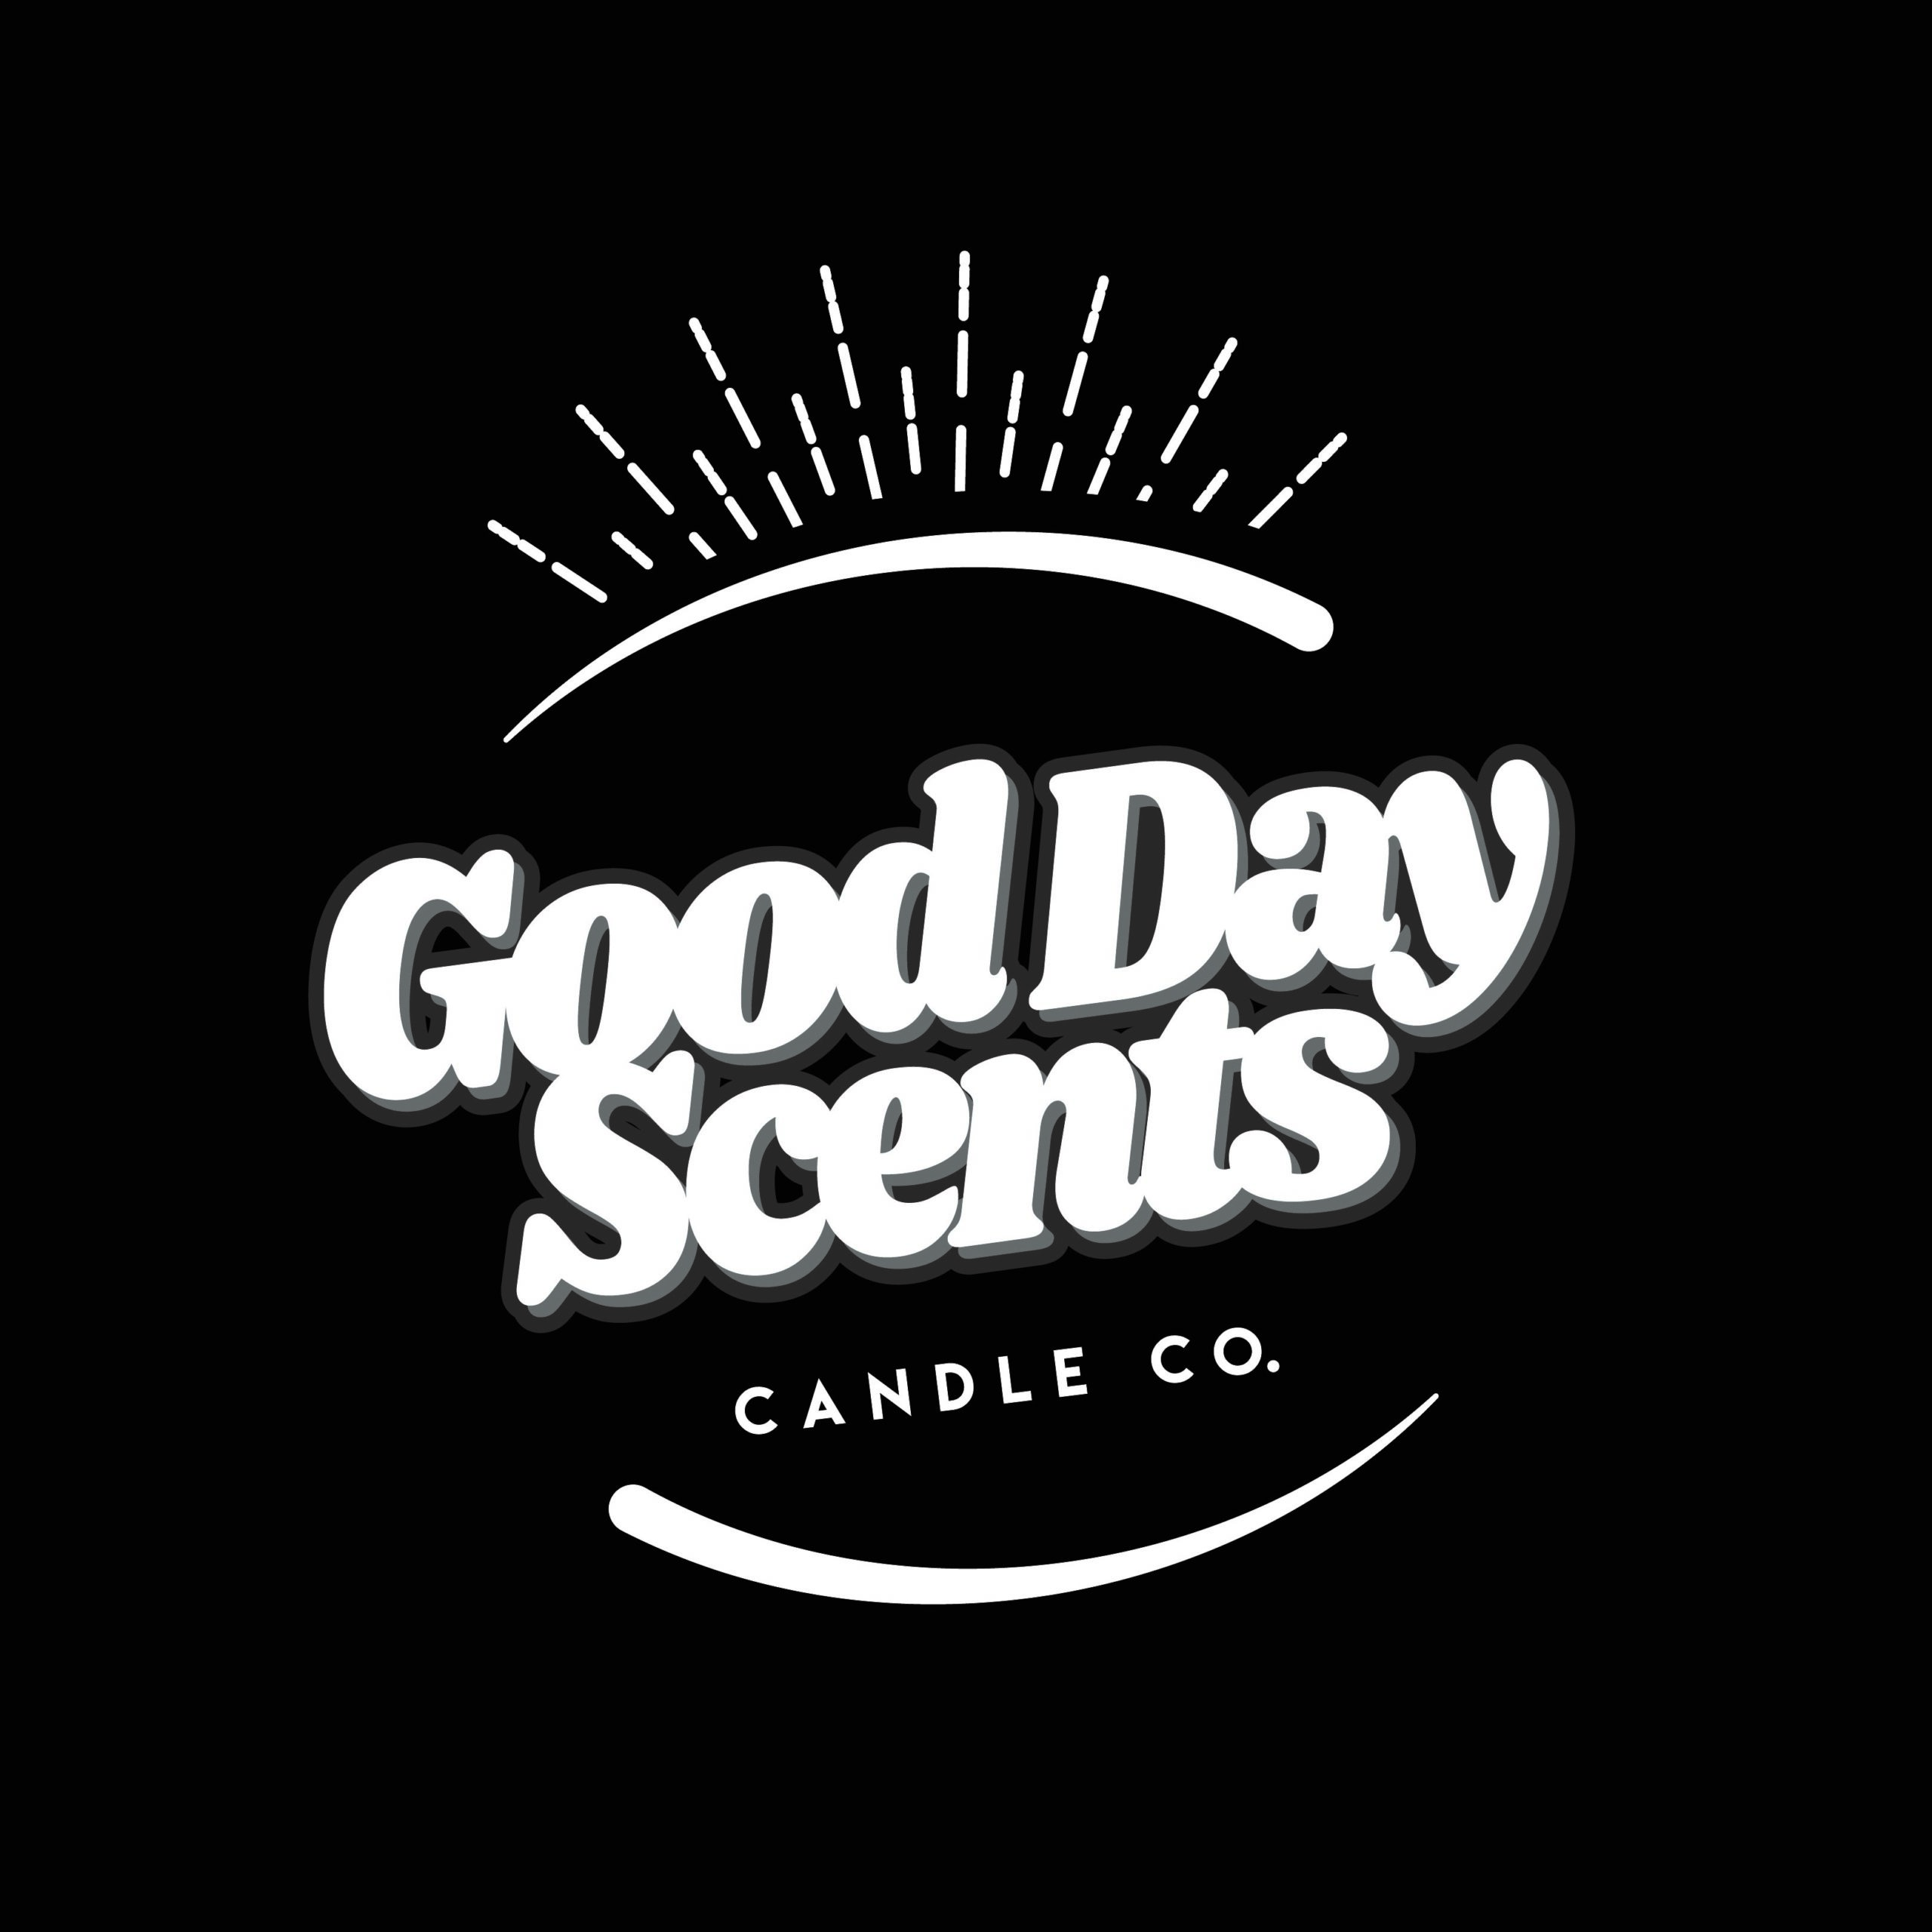 JeremyBrooks_GoodDayScentsCandleCo._Logo